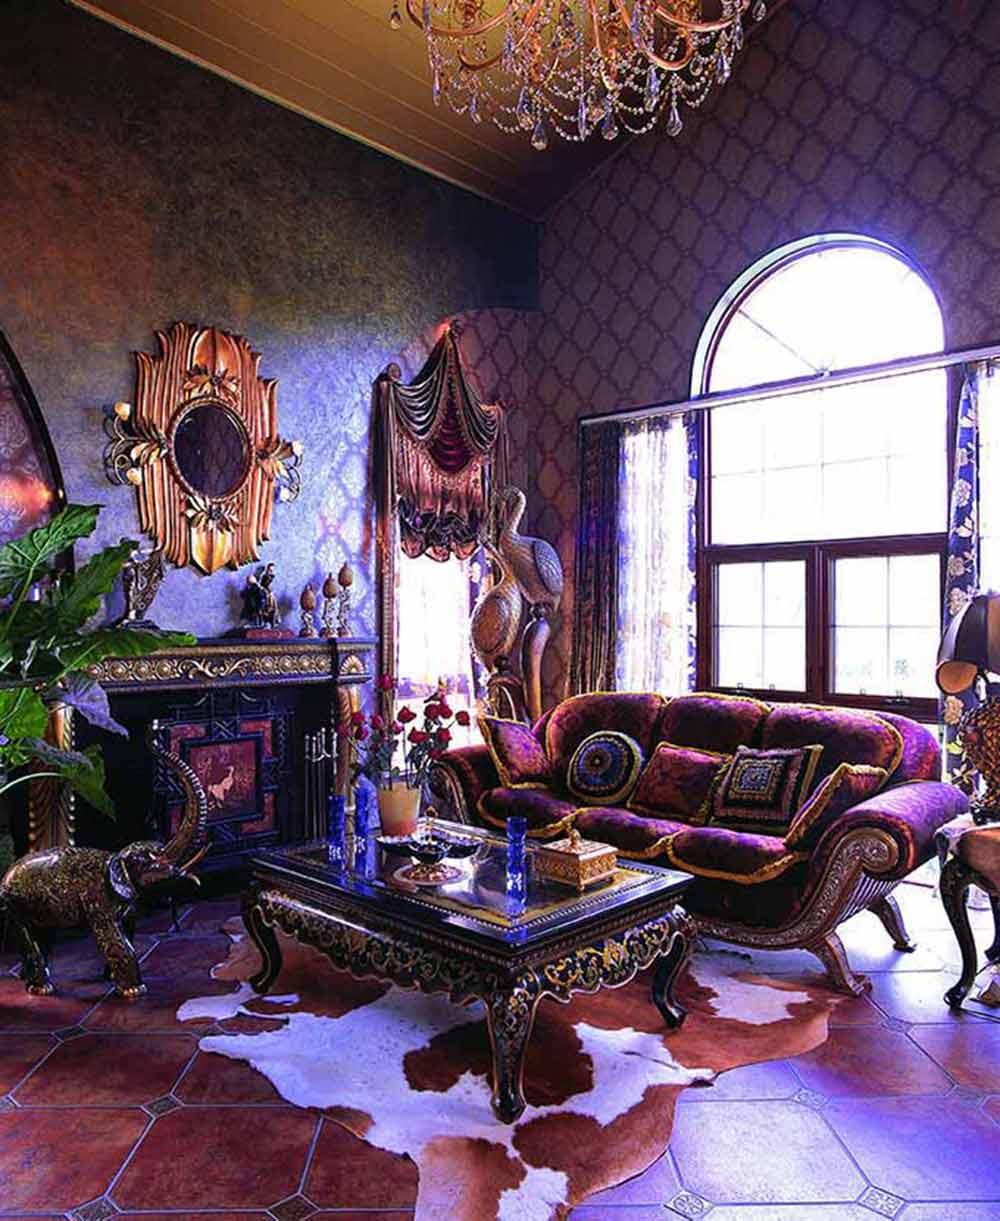 古铜色的墙壁与紫色的家私搭配散发着神秘的气质，铜制大象是热带雨林的自然象征，配上绿色植物，整个空间就是一幅原始自然的画作。